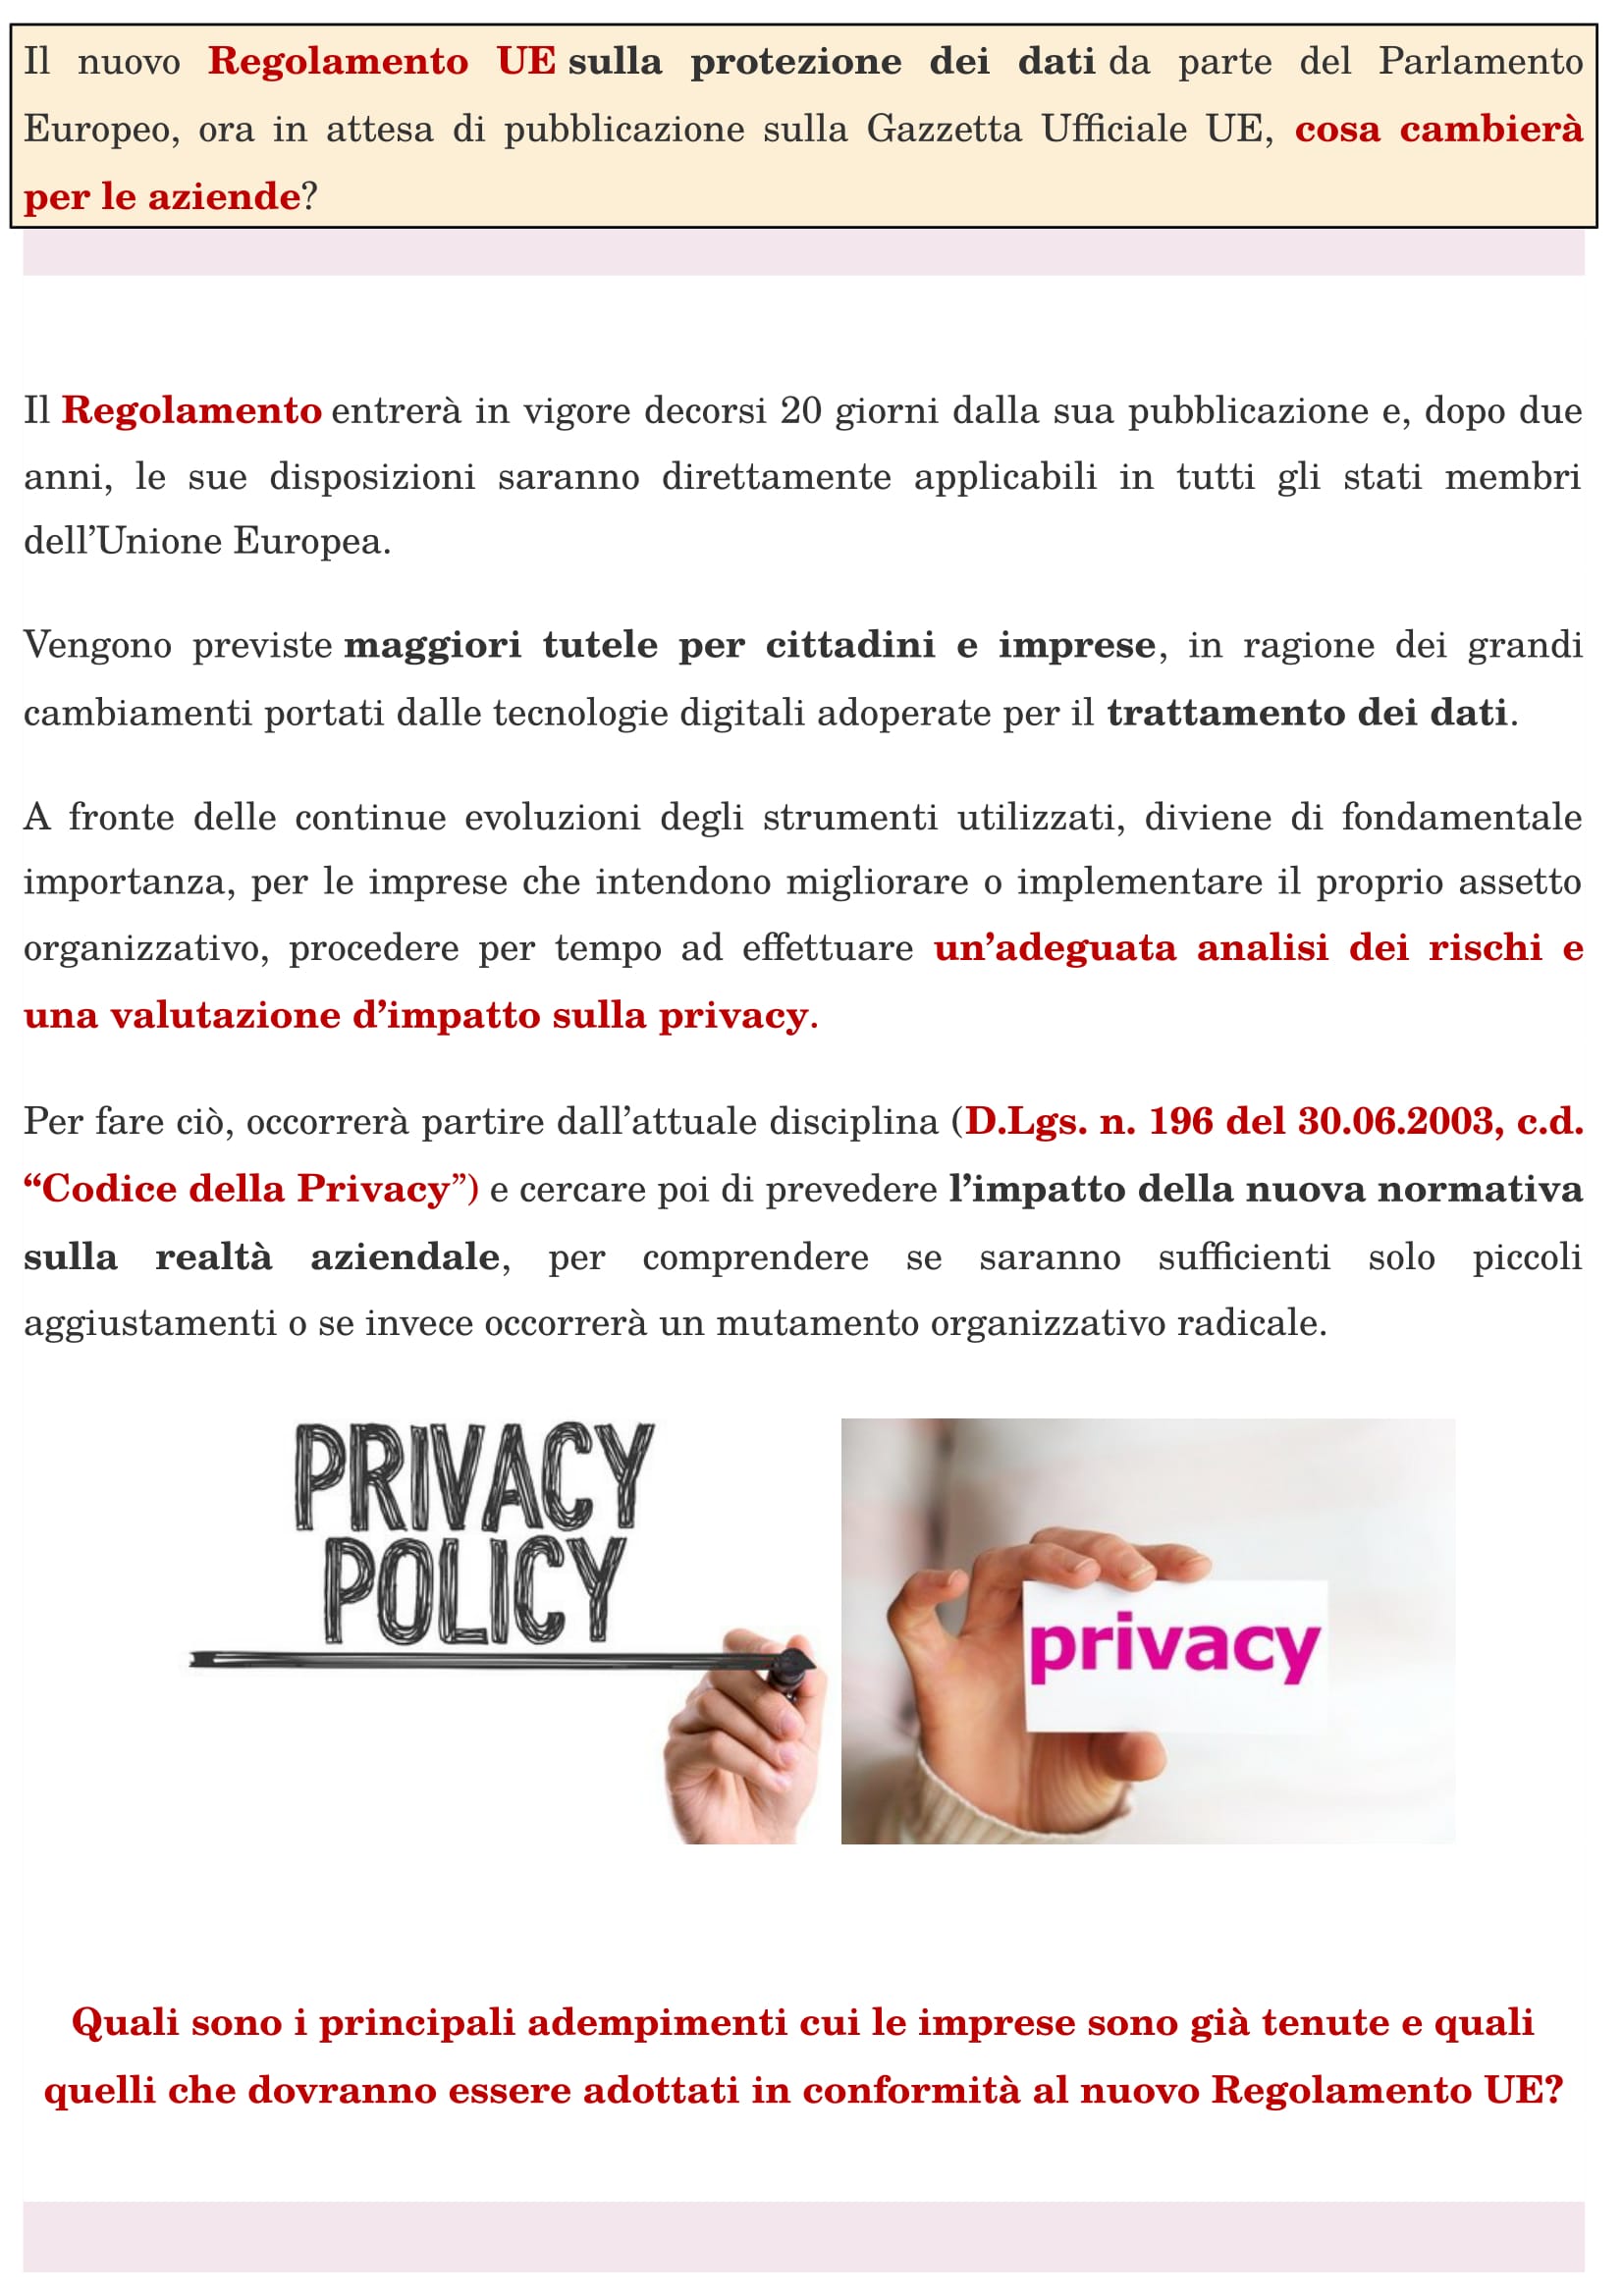 privacy-03